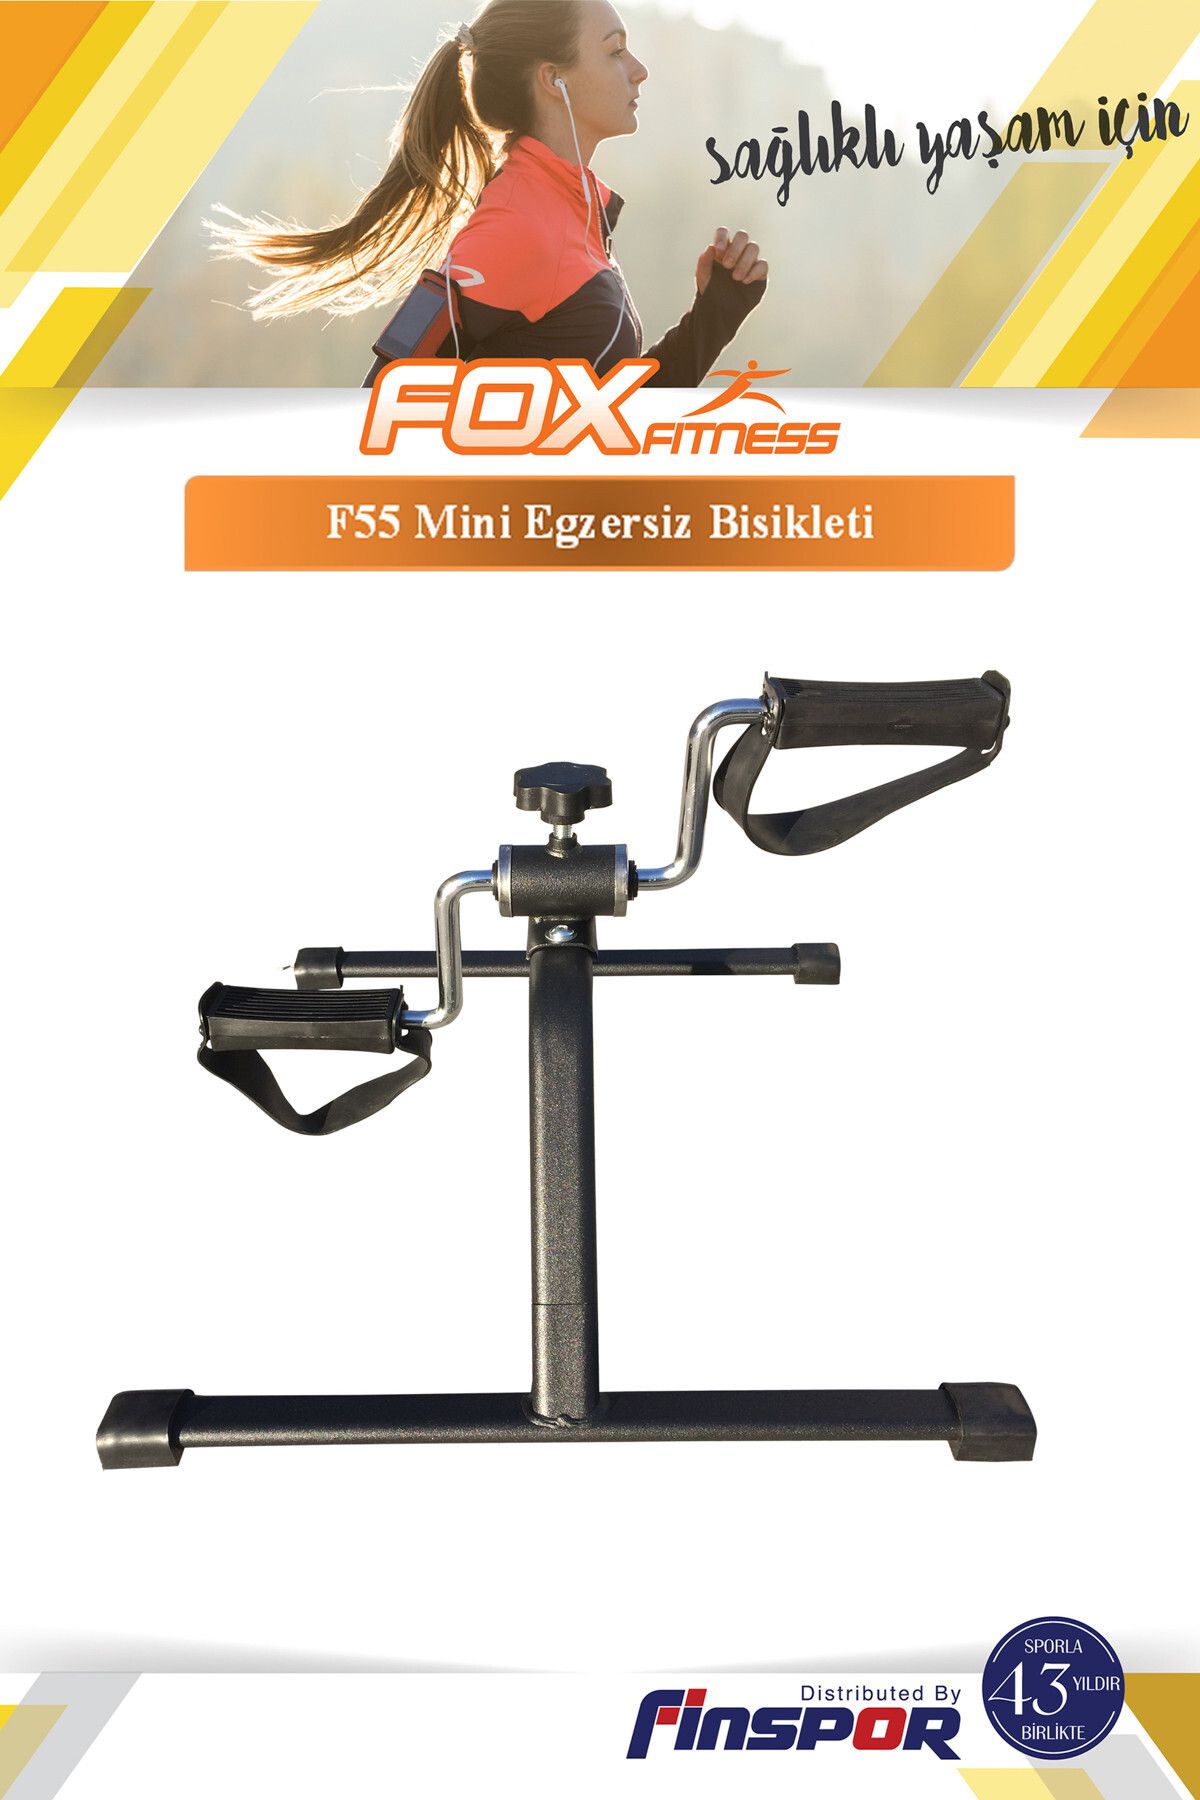 Fox Fitness Fox Fitness F55 Mini Bisiklet